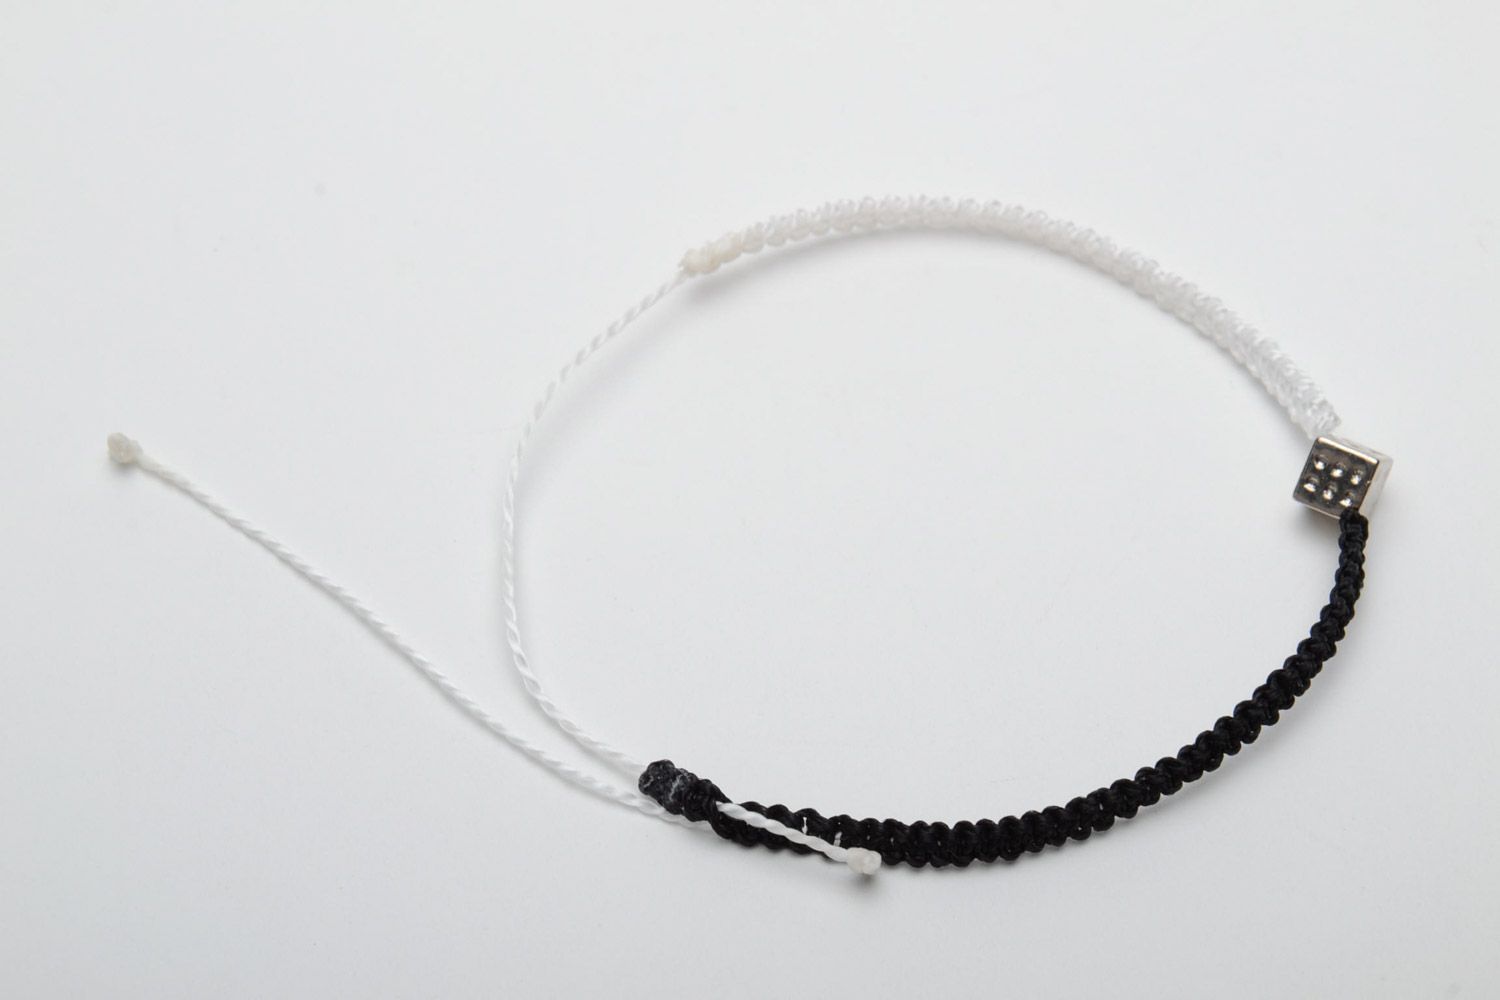 Handmade Armband in Schwarz Weiß aus Kapronfäden in Makramee Technik foto 4